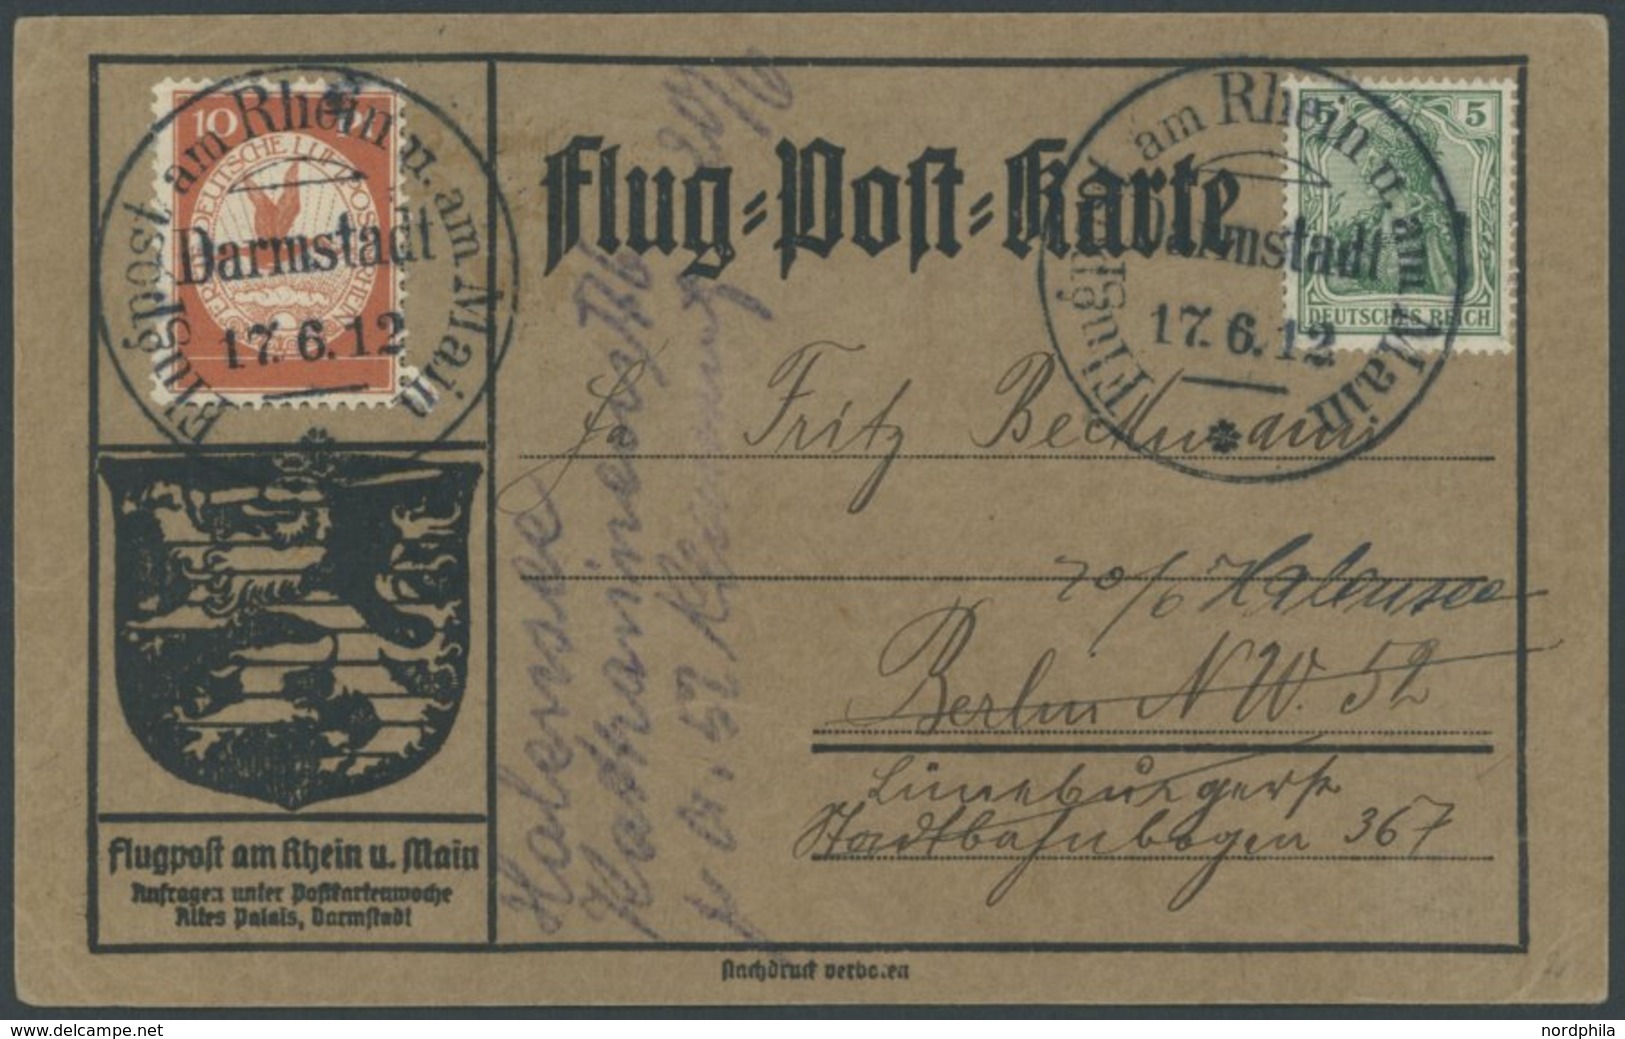 ZEPPELINPOST 10 BRIEF, 1912, 10 Pf. Flp. Am Rhein Und Main Auf Flugpostkarte Mit 5 Pf. Zusatzfrankatur, Sonderstempel Da - Posta Aerea & Zeppelin